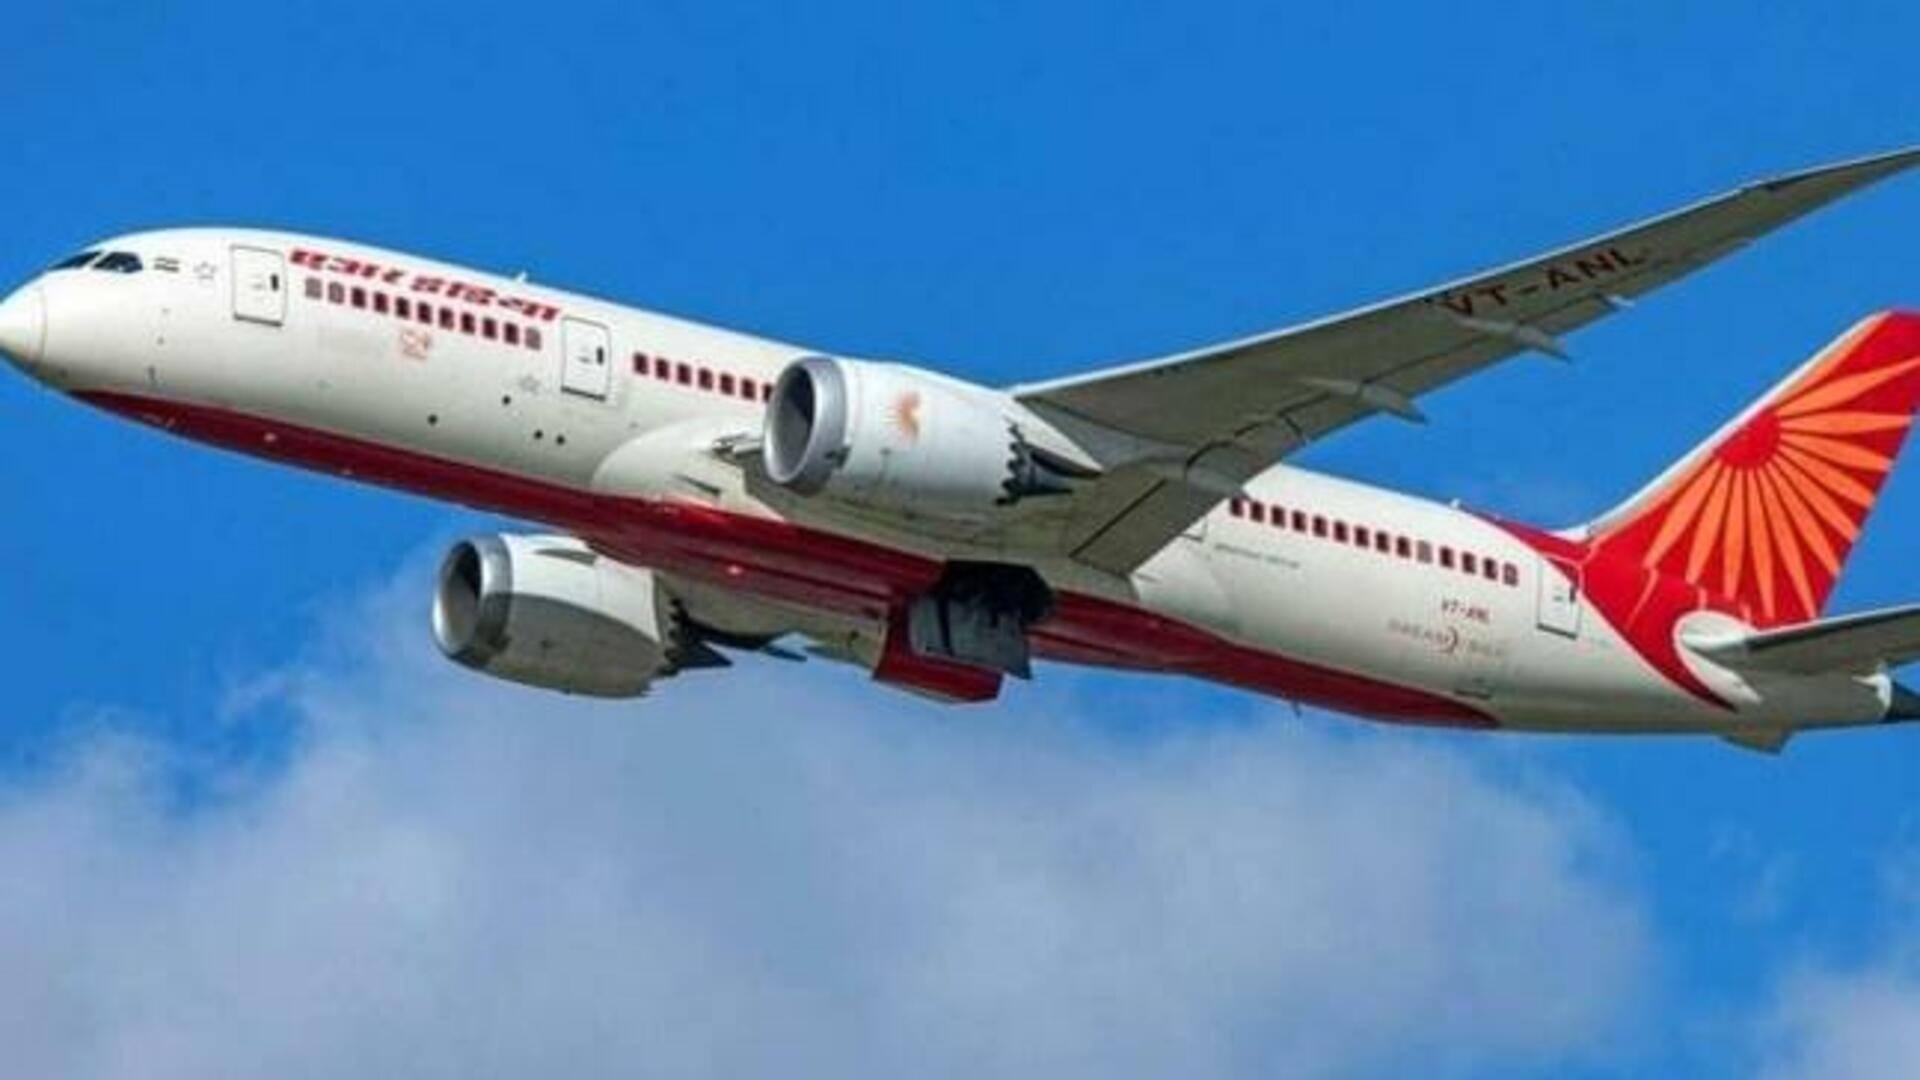 एयर इंडिया की न्यूयॉर्क-दिल्ली फ्लाइट को मेडिकल इमरजेंसी के कारण लंदन डायवर्ट किया गया 